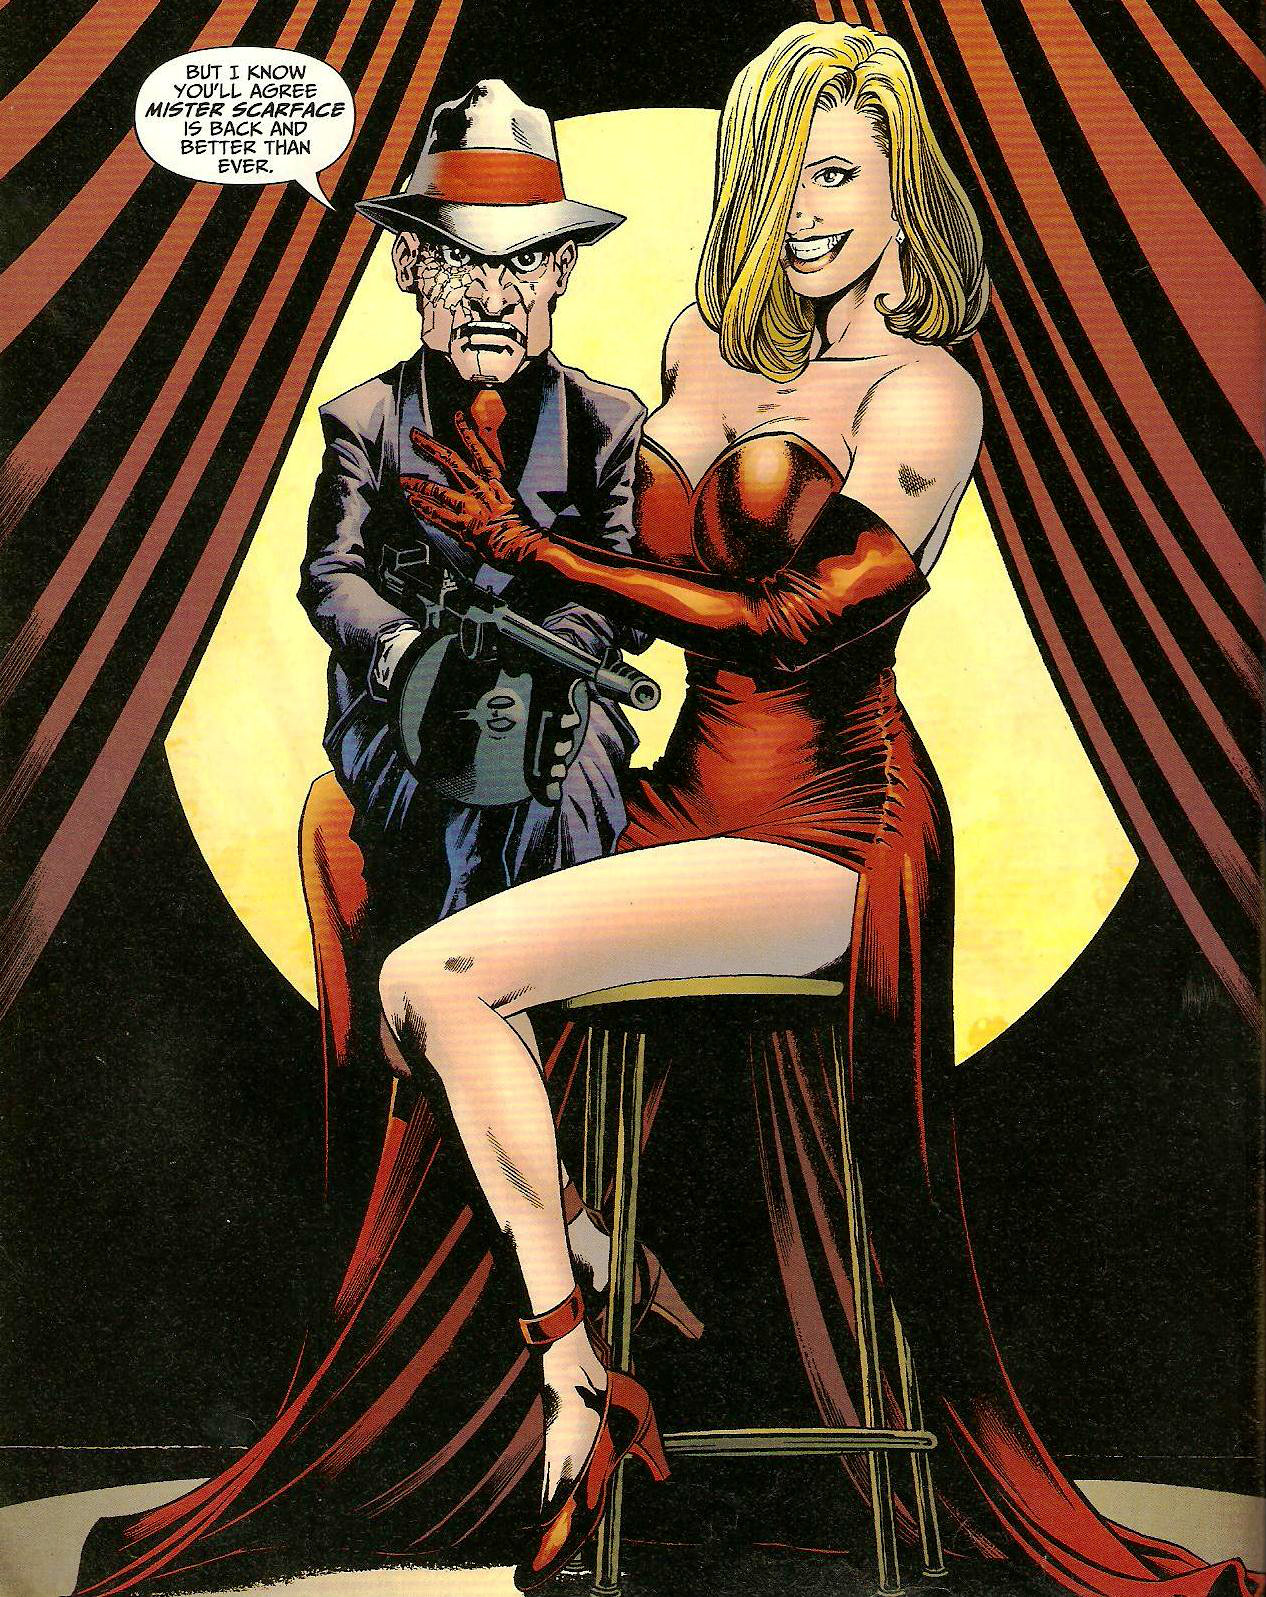 From Detective Comics (Vol. 1) #827 (2007)